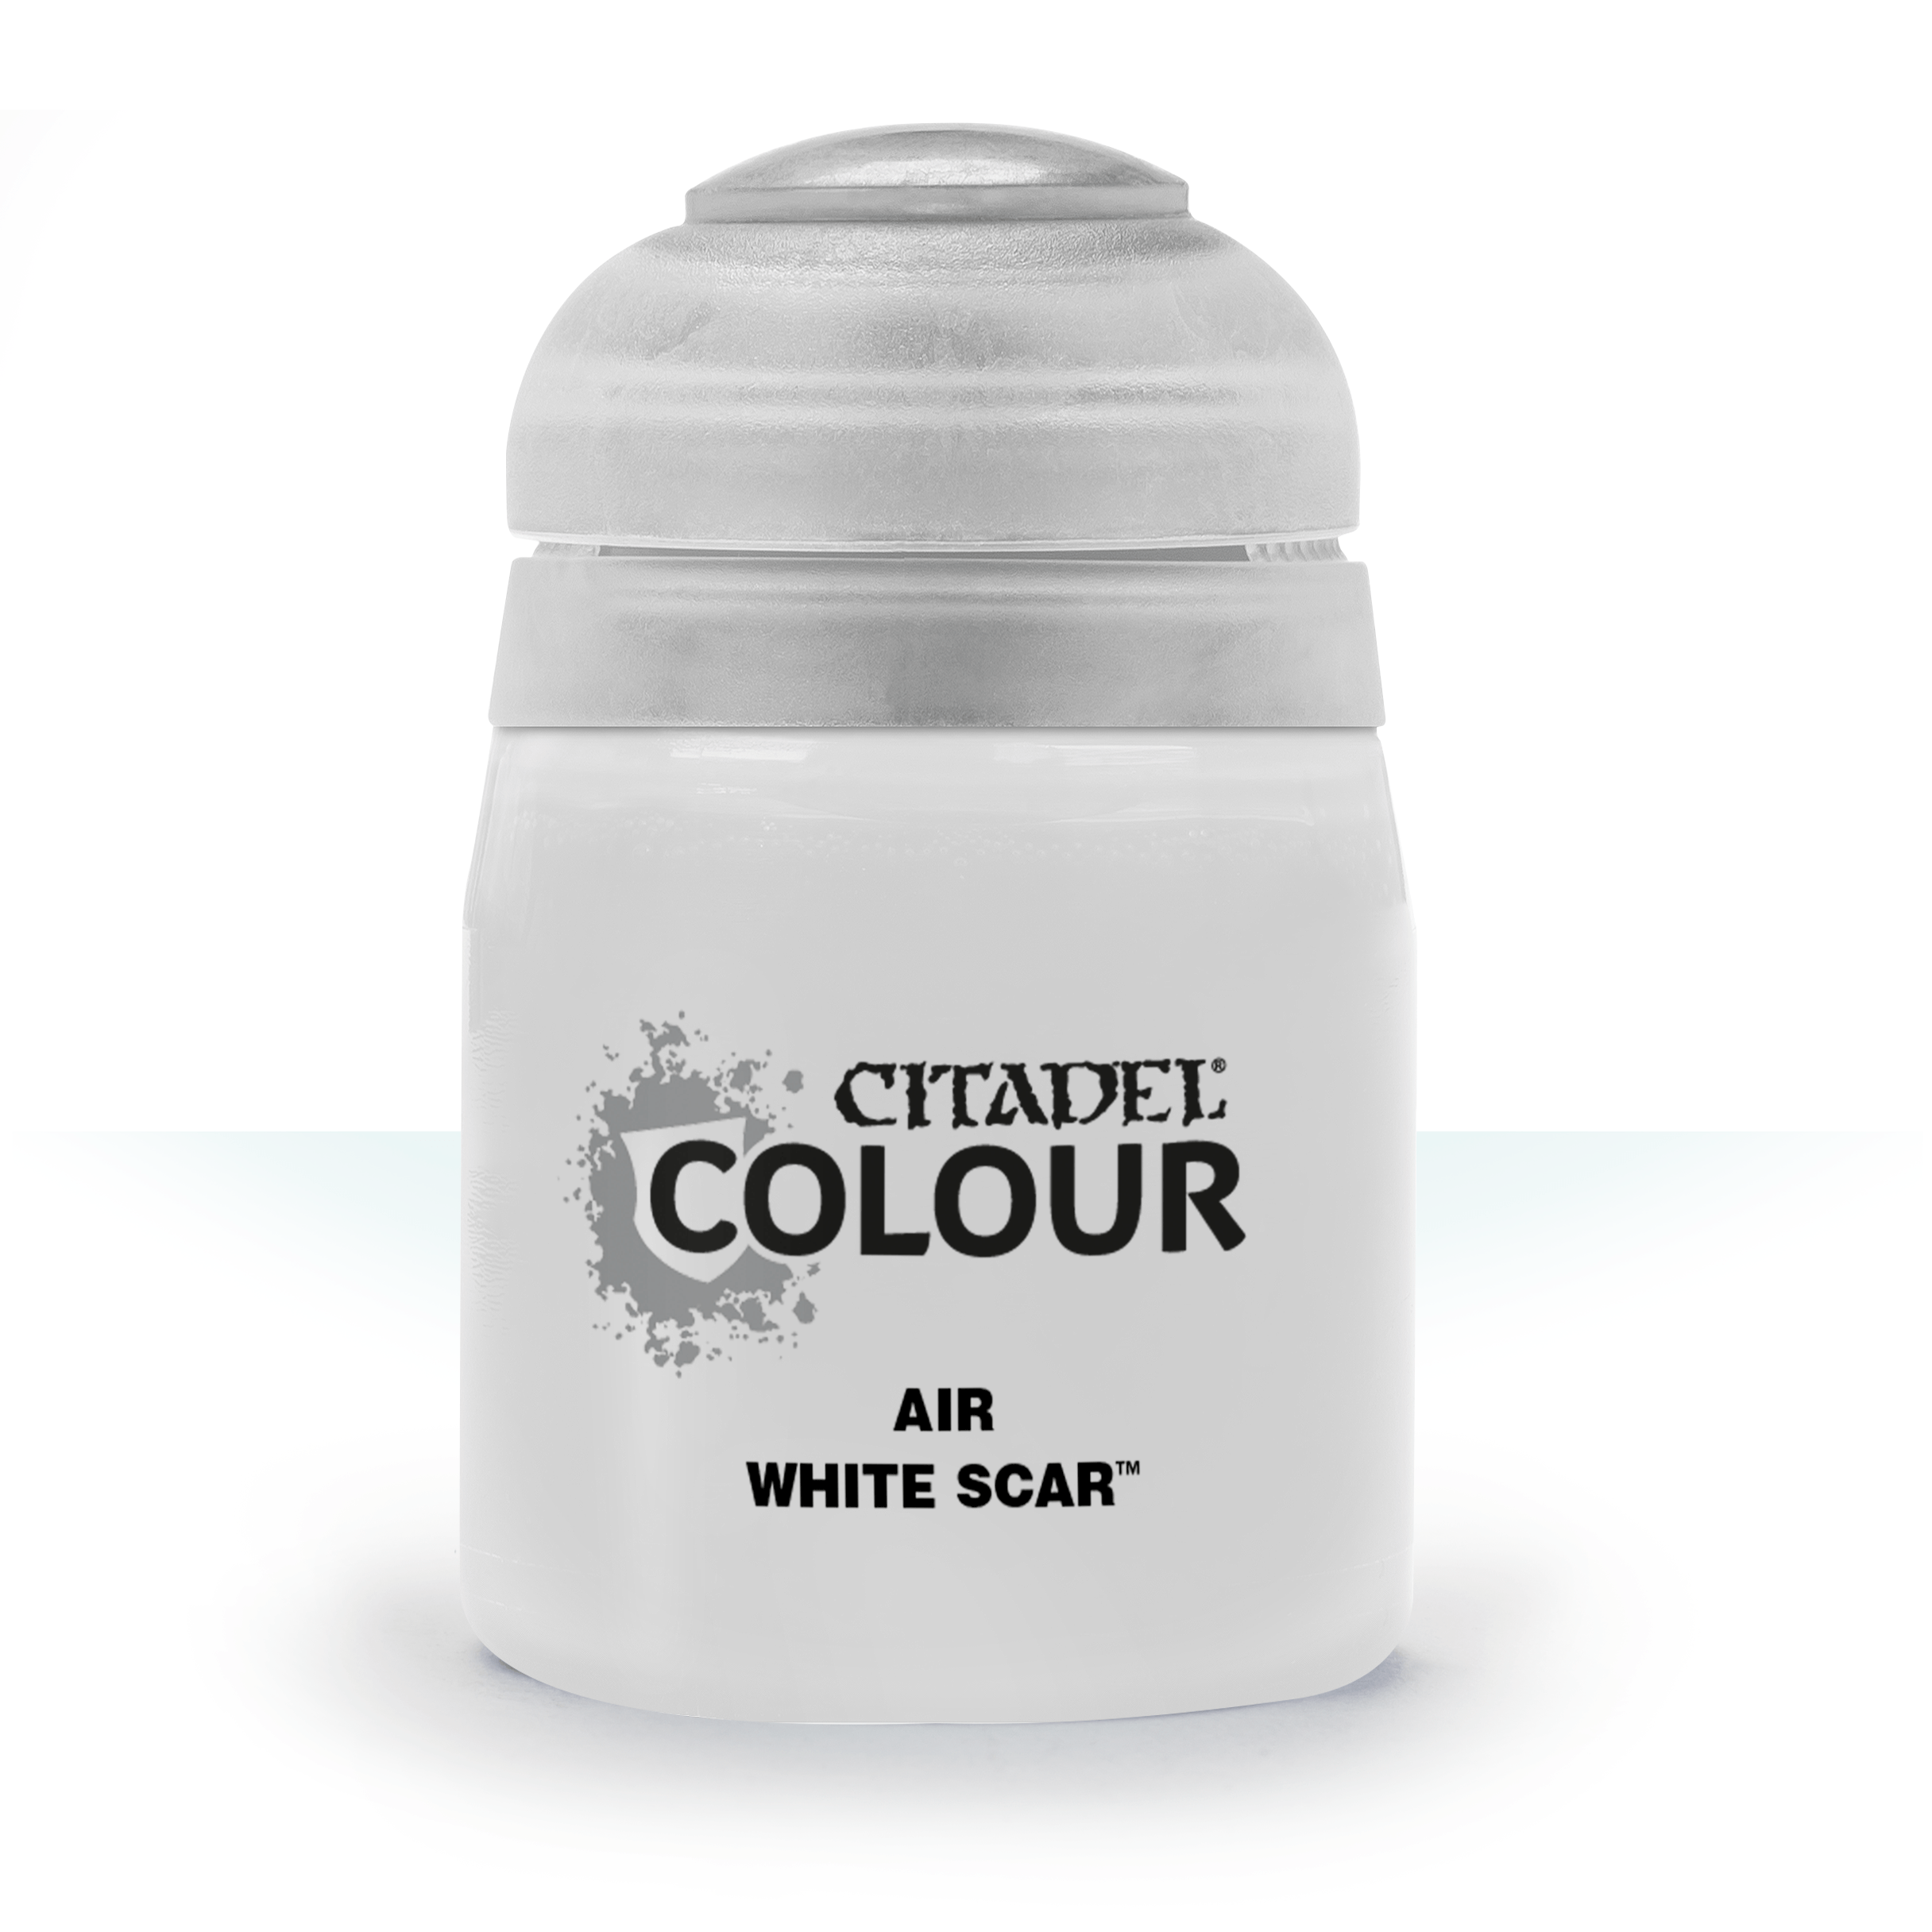 Air White Scar - Citadel Colour - 24 ml